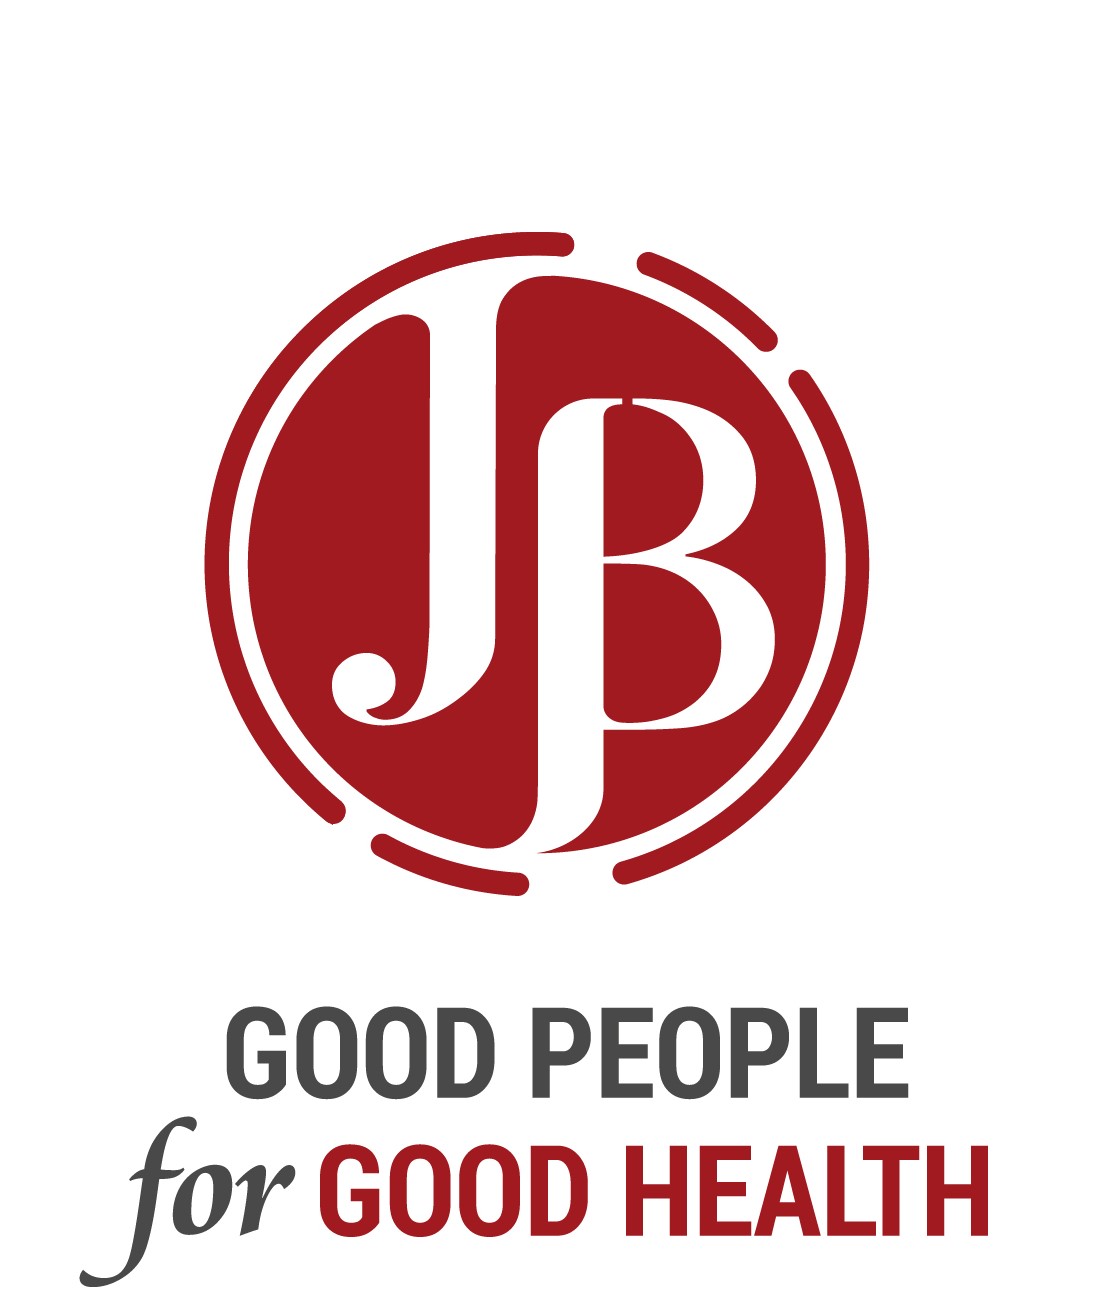 jb logo with tag line